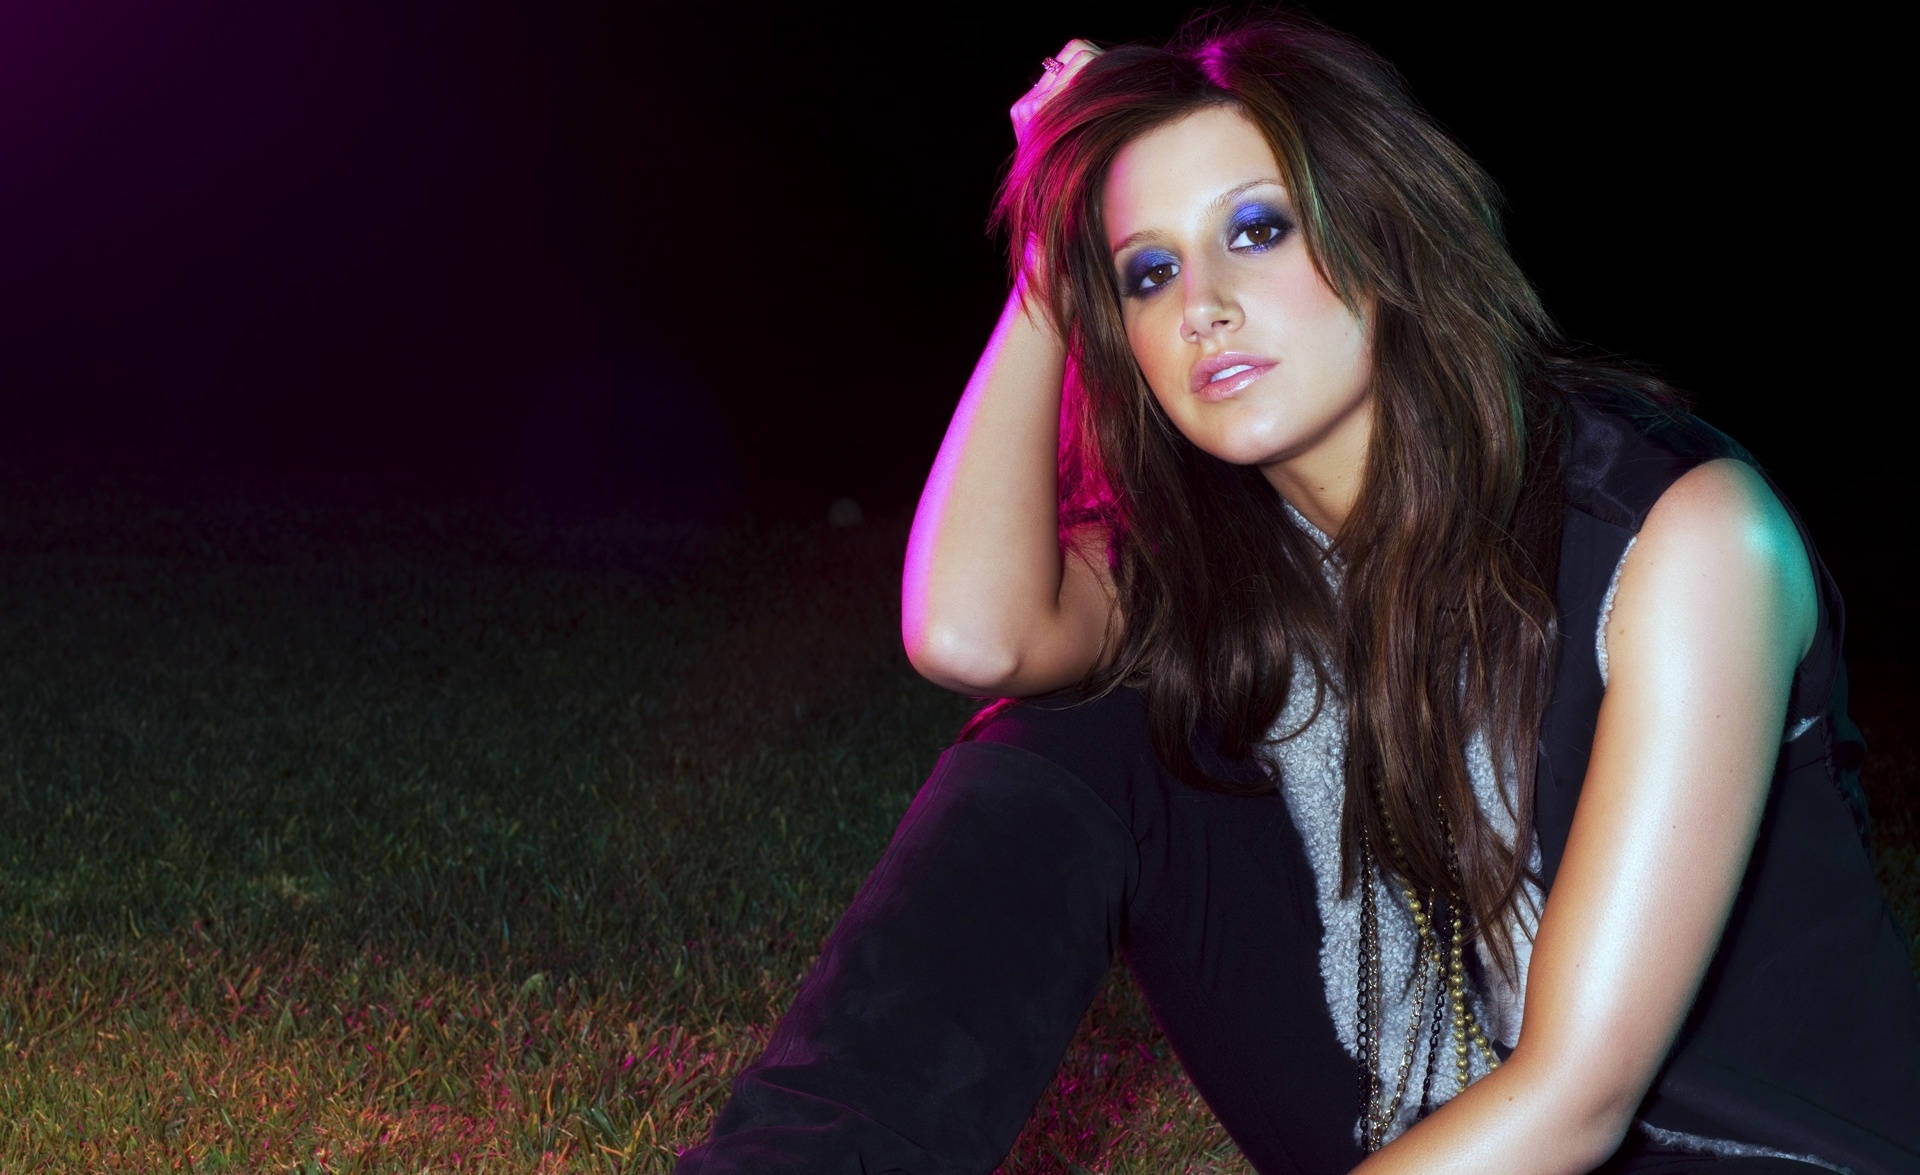 Ashley Tisdale Emanates Vibrant Energy With Her Dazzling Blue Eyeshadow. Background